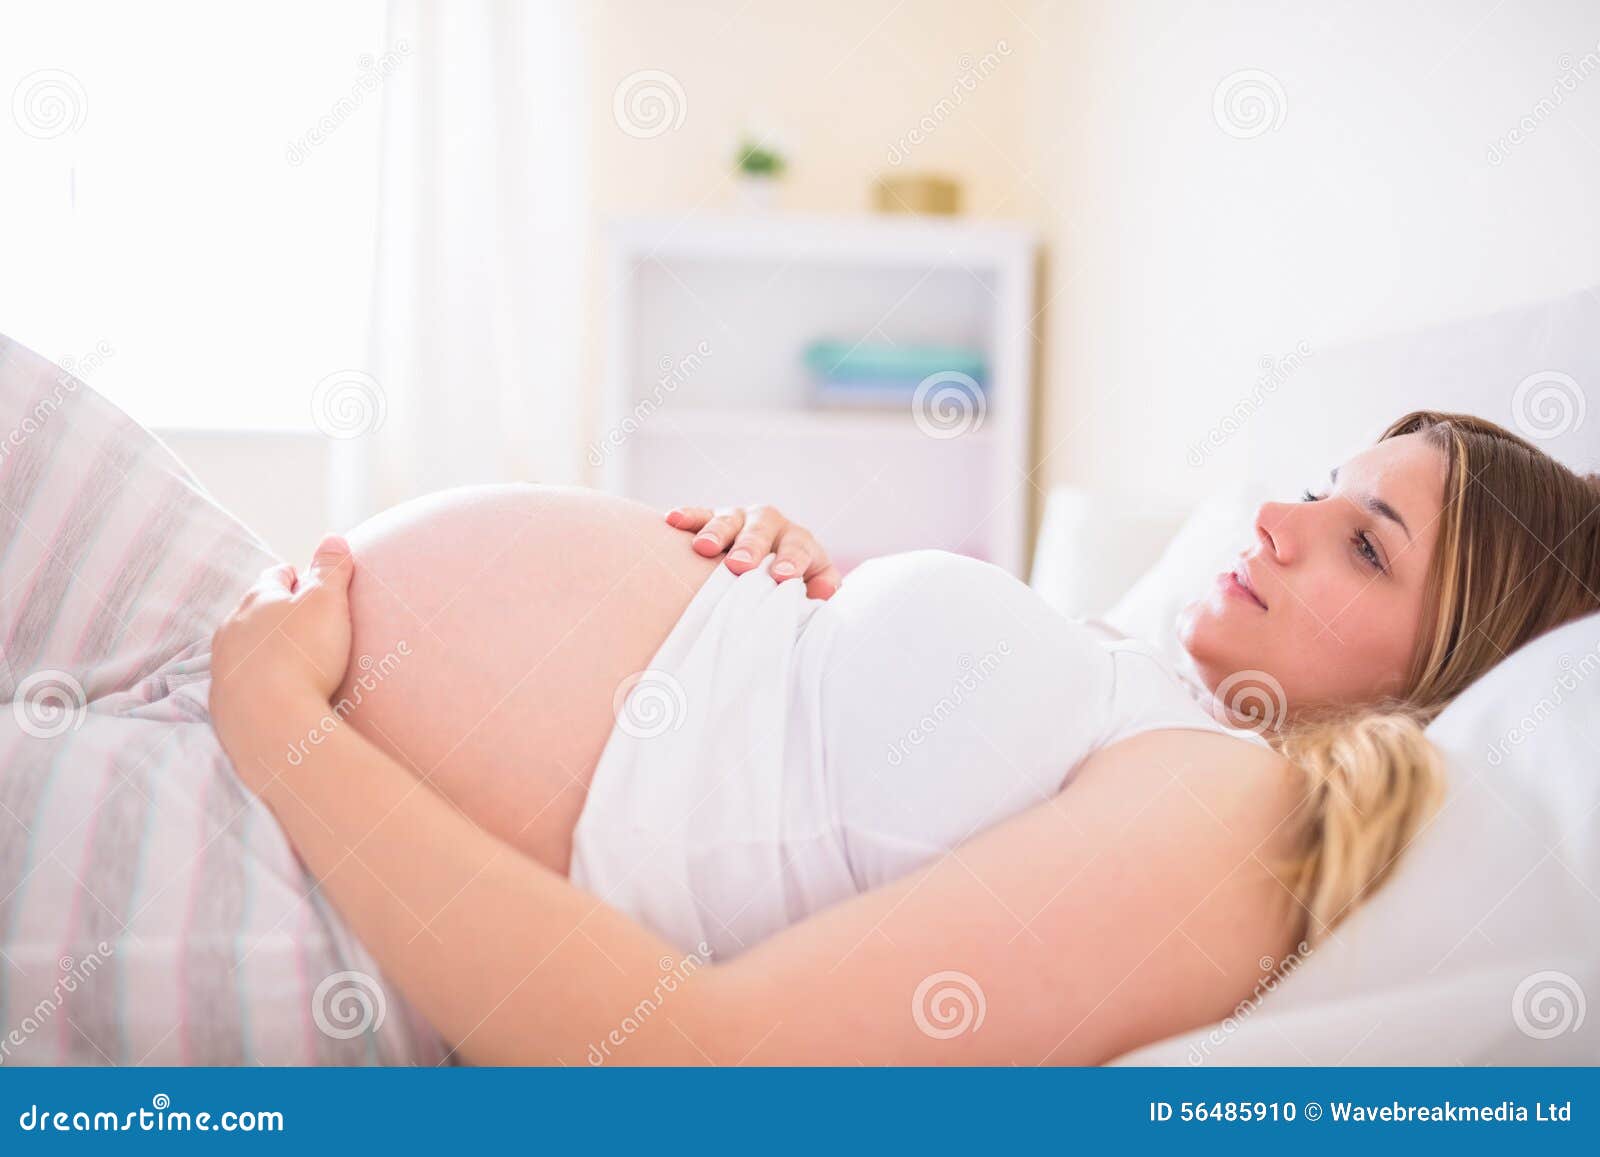 Отекаю после беременности. Лежит с беременной женщиной. Вторая половина беременности.